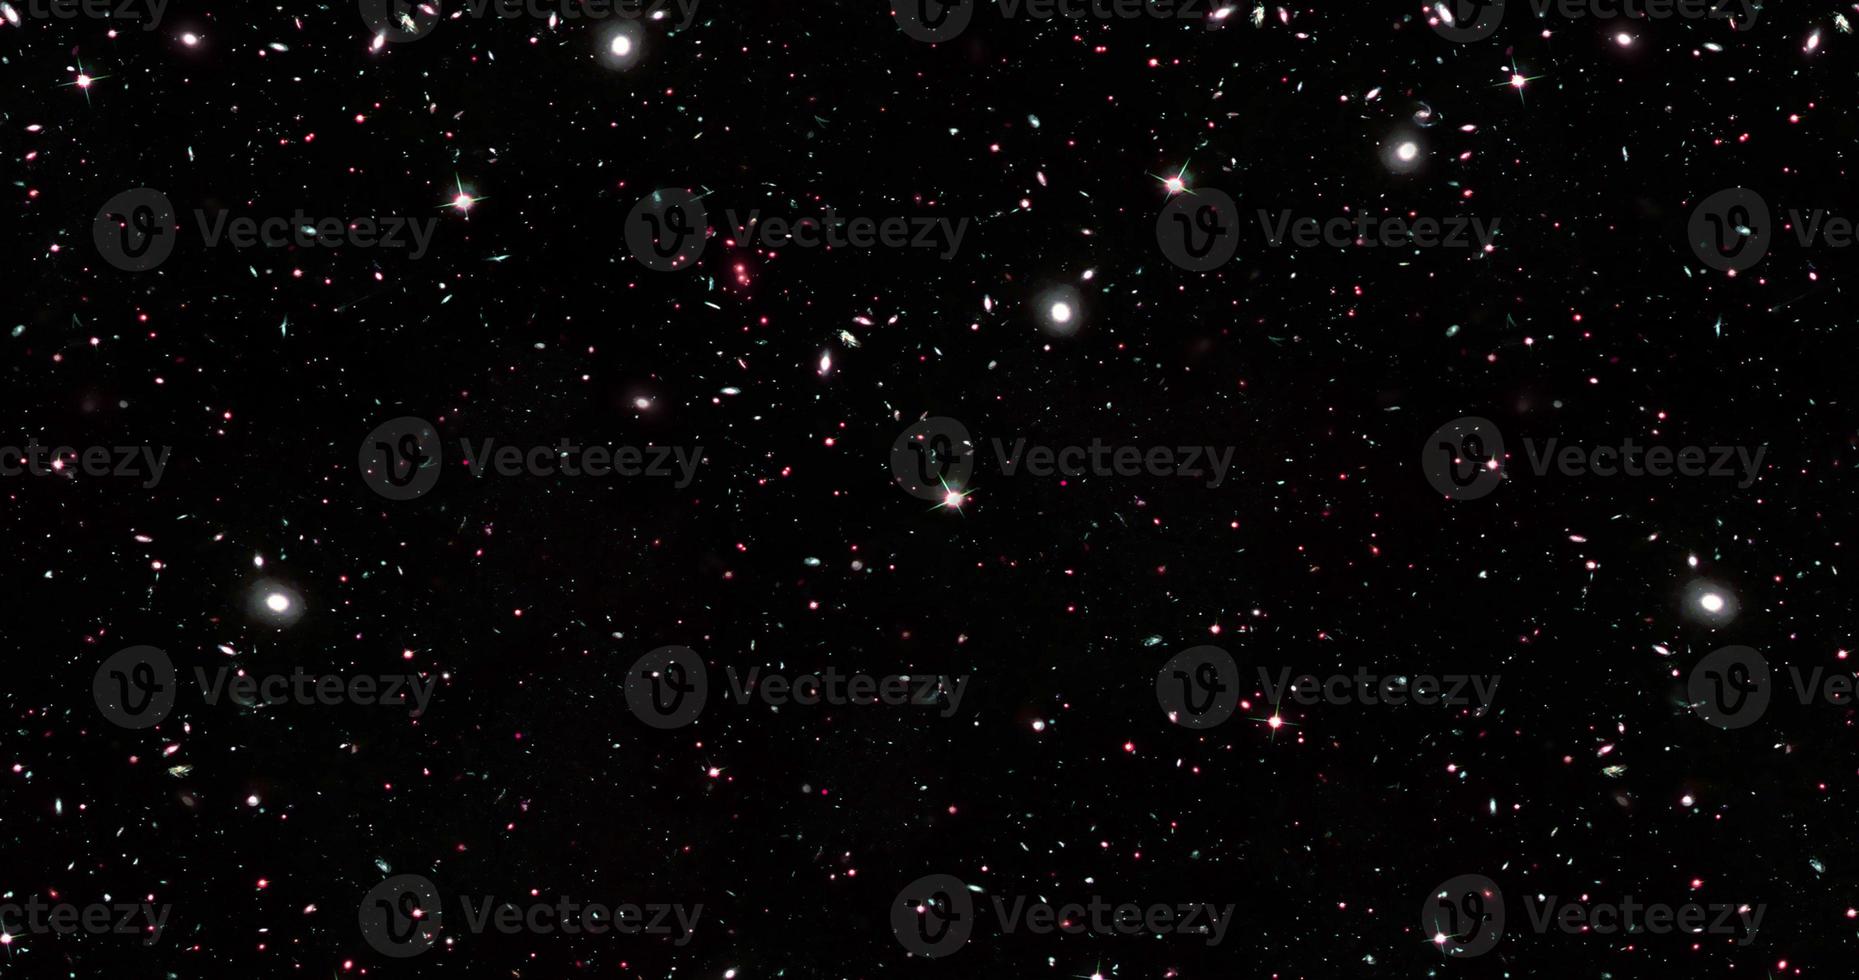 achtergrond van abstracte sterrenstelsels met sterren en planeten met sterrenstelselmotieven in zwart-witruimte van nachtlichtuniversum foto